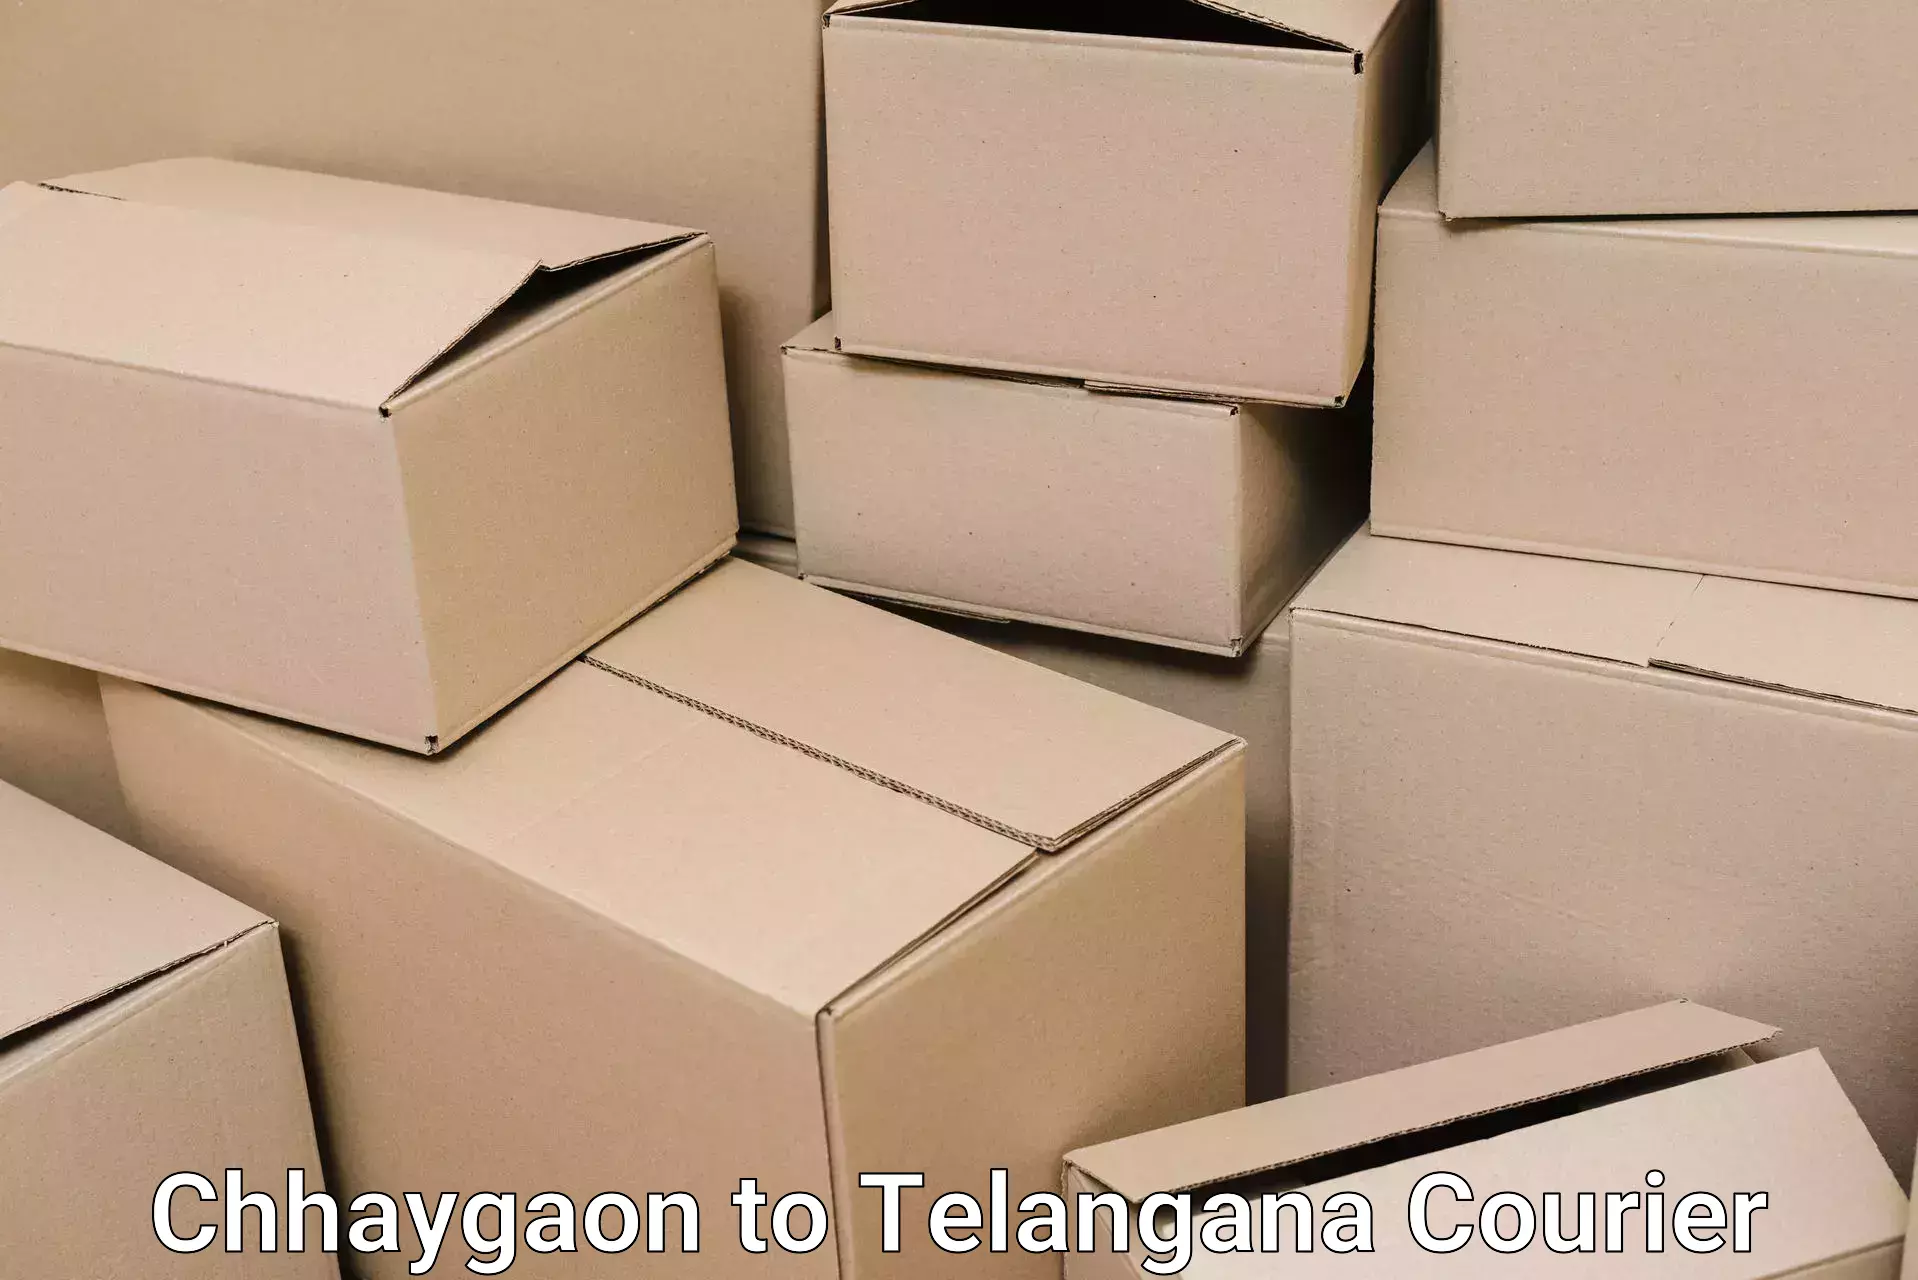 Moving and handling services Chhaygaon to Haliya